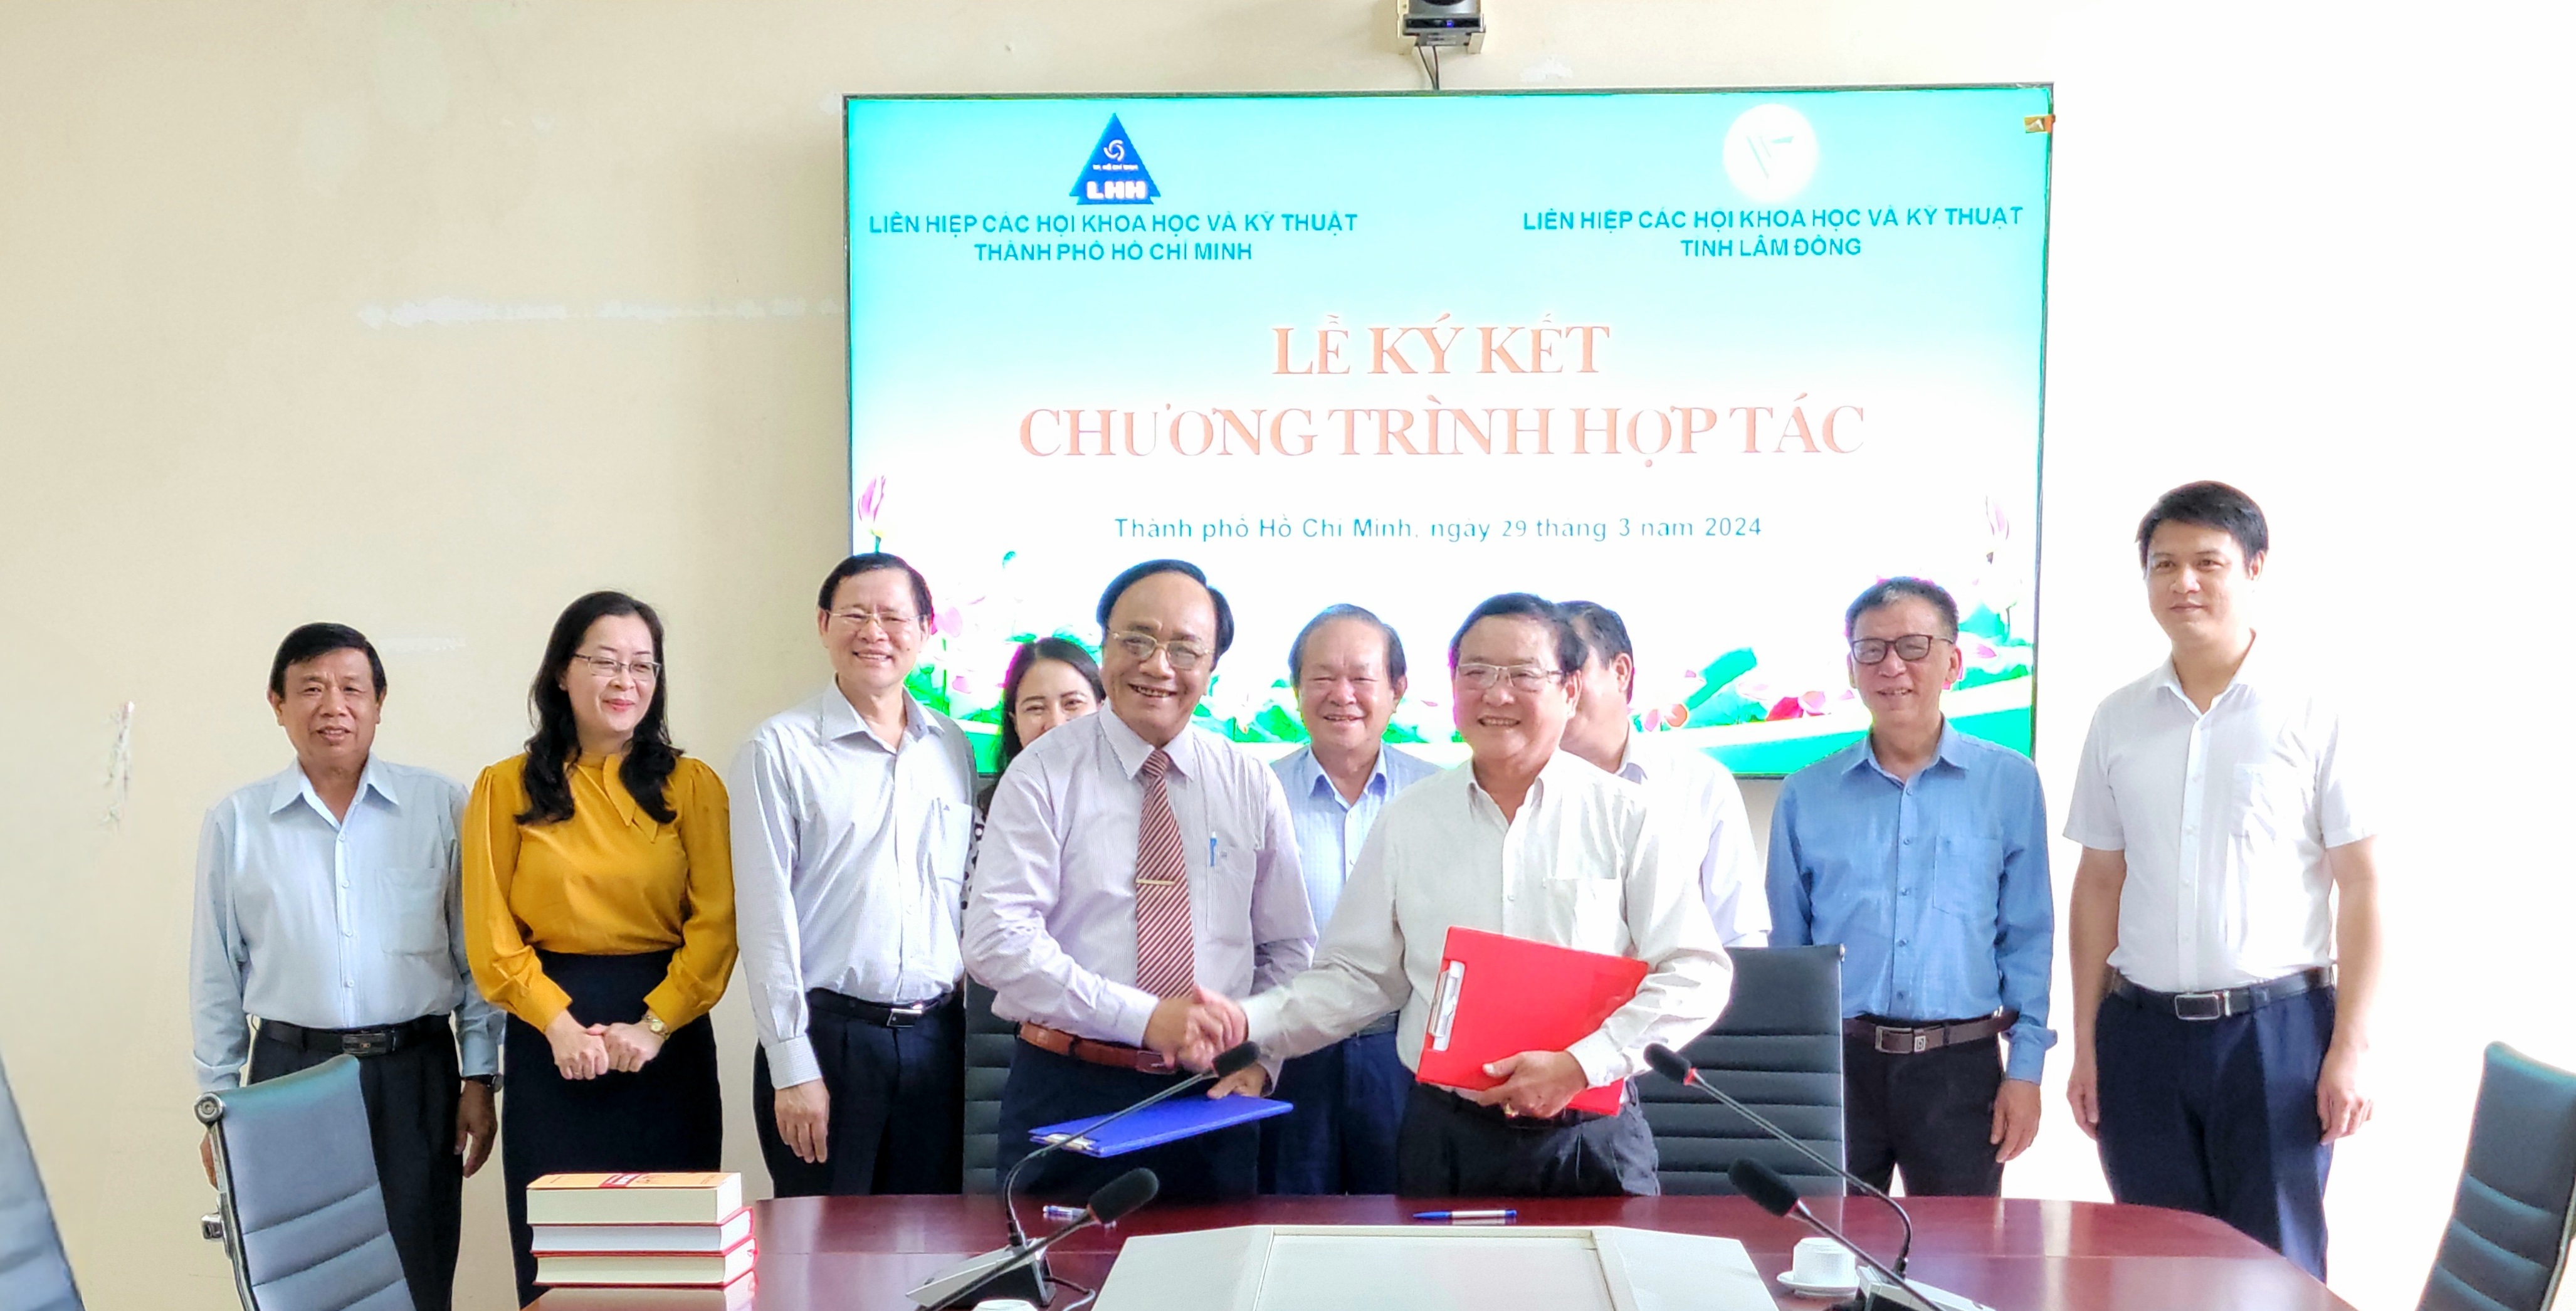 Chương trình hợp tác giữa Liên hiệp các Hội KH&KT tỉnh Lâm Đồng và Liên hiệp các Hội KH&KT thành phố Hồ Chí Minh